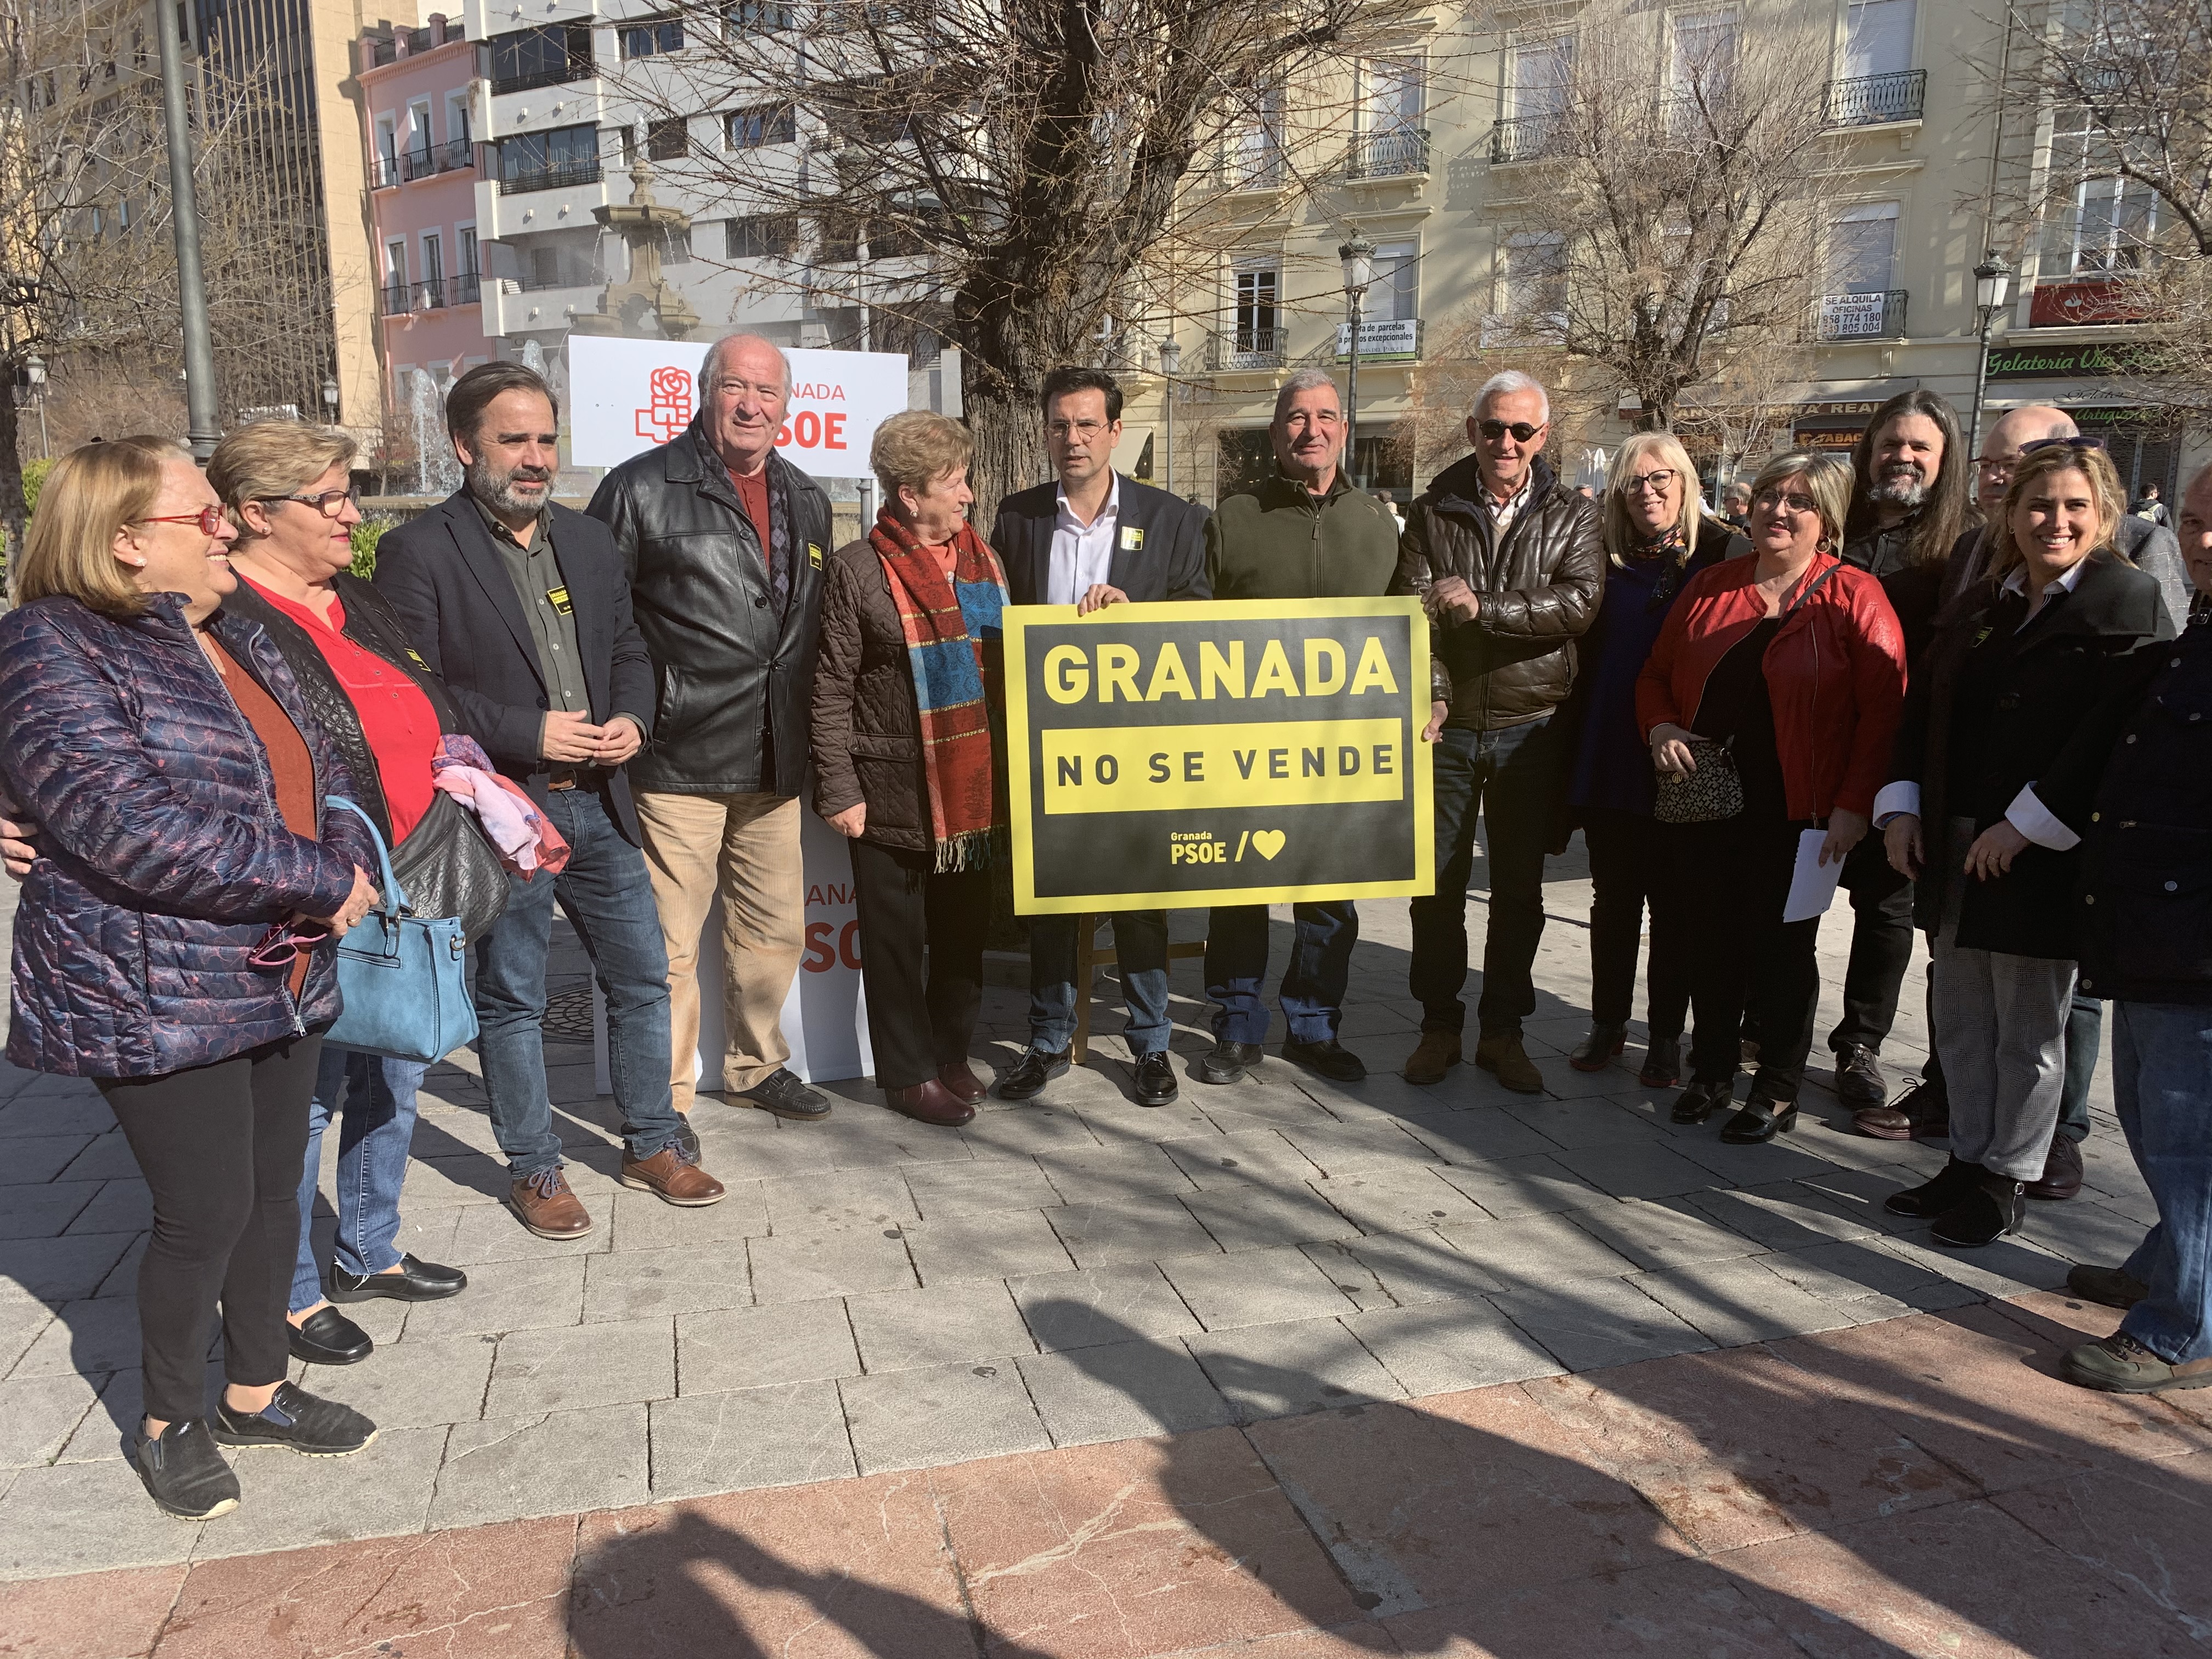 «Granada no se vende» nueva campaña del PSOE para evidenciar las consecuencias de los pactos CS, PP y Vox